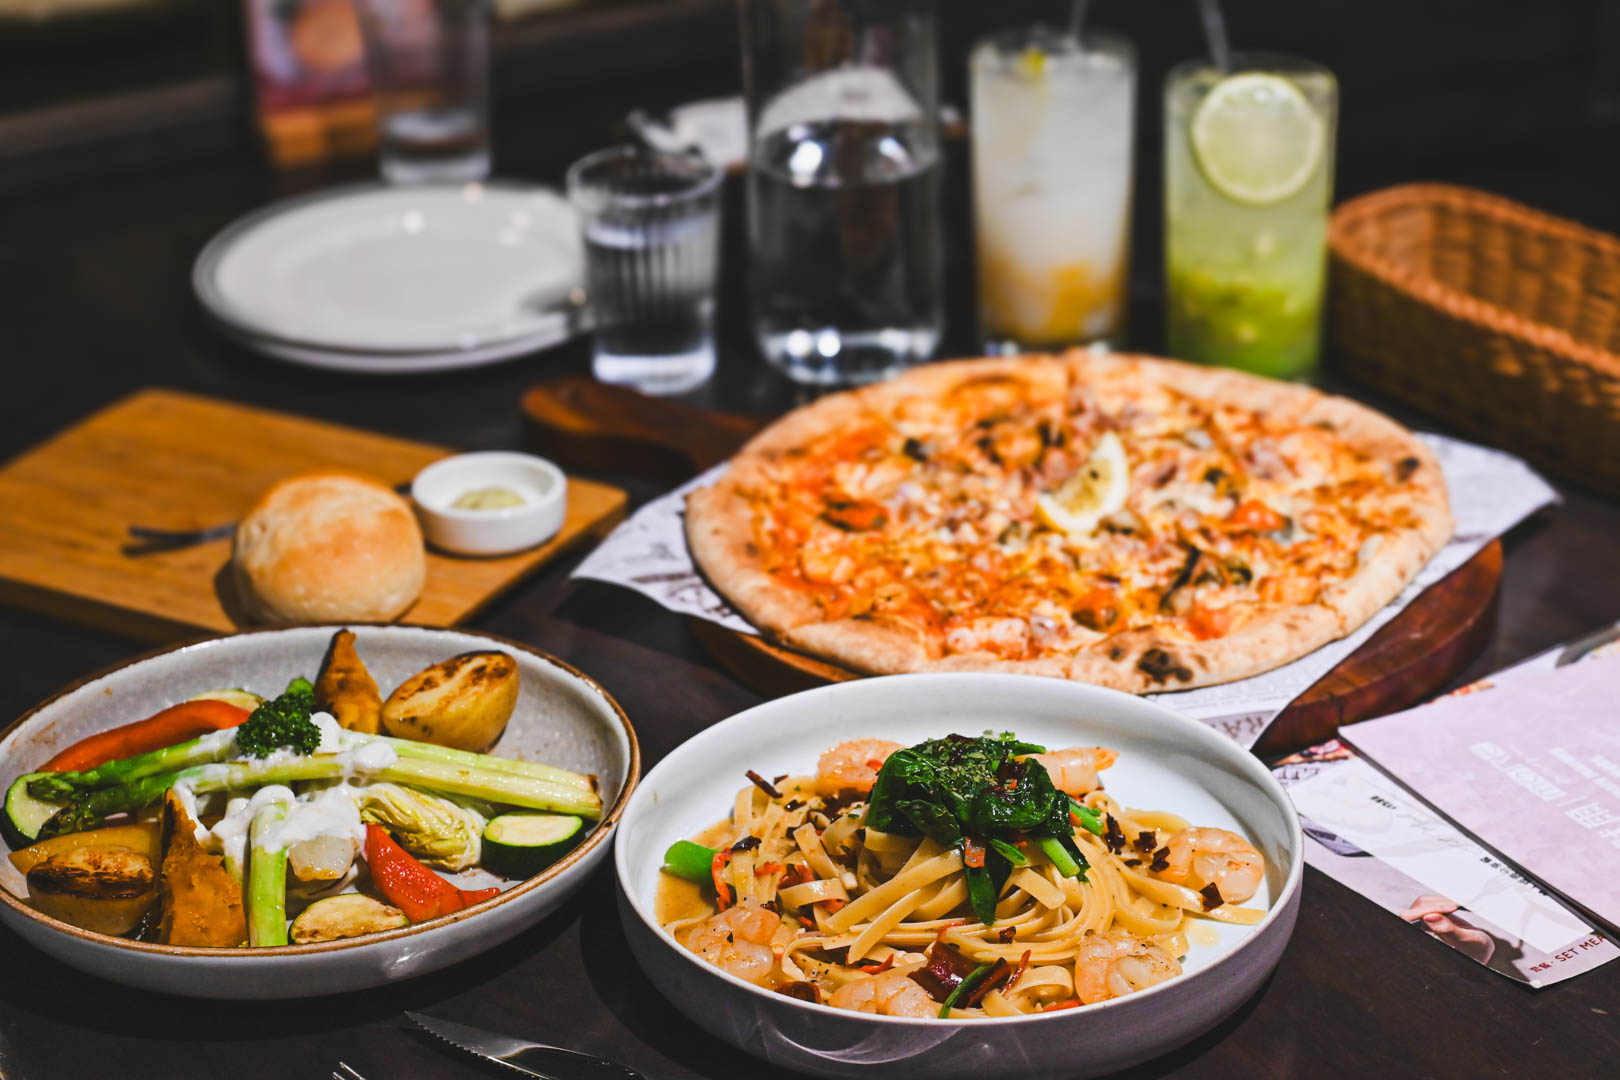 默爾, 默爾菜單, 默爾推薦, 中山美食, 默爾 pasta pizza, MORE默爾義大利餐廳